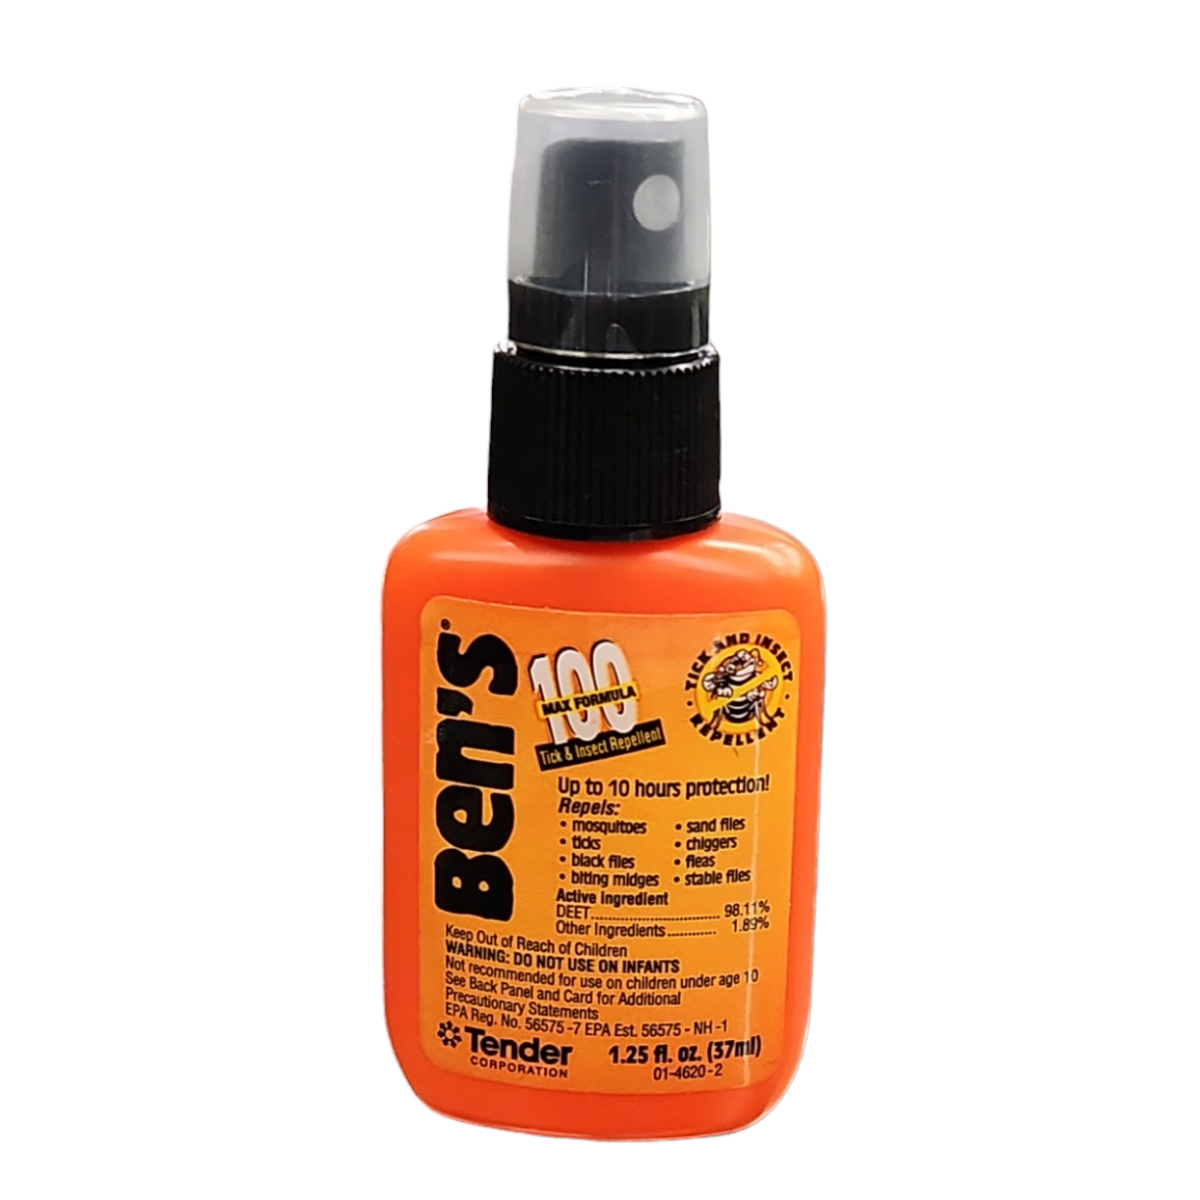 Ben's 100 Max DEET Insect Repellent Spray